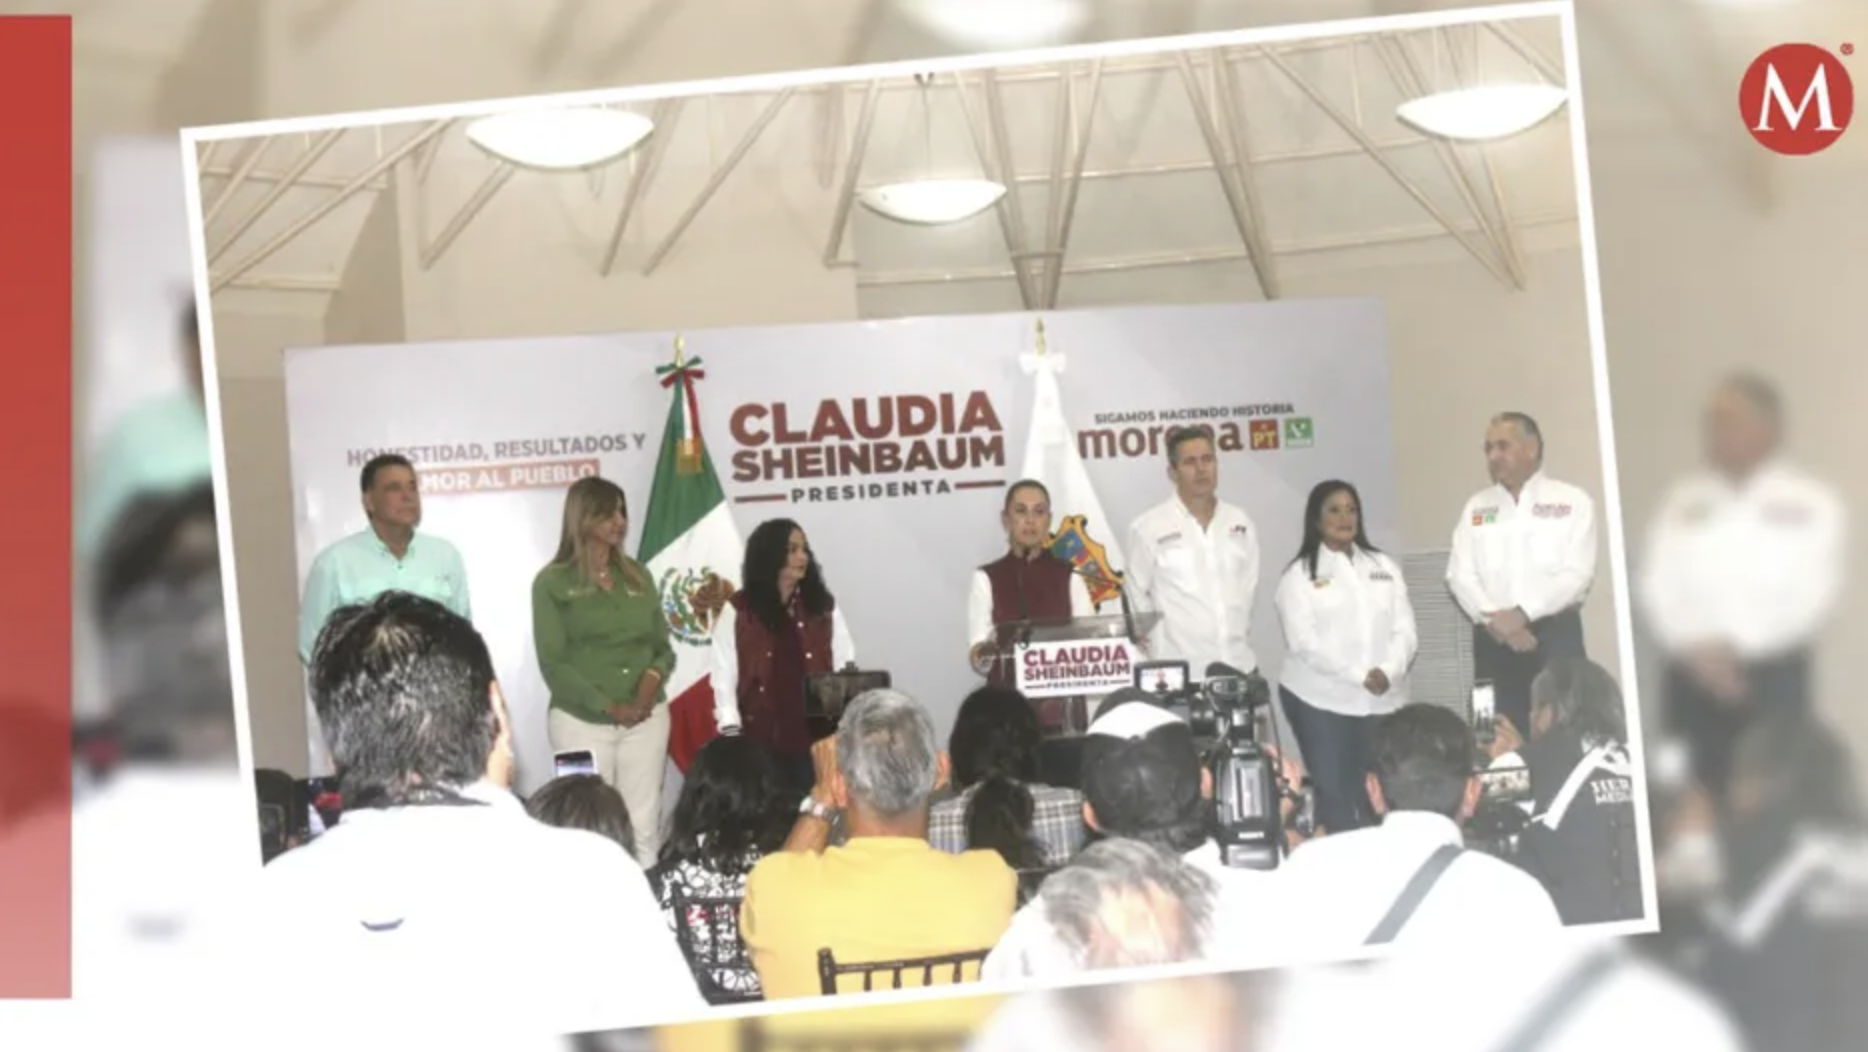 CDMX- Promete Sheinbaum transporte y agua para el sur, y tren de pasajeros para Tamaulipas (Milenio)